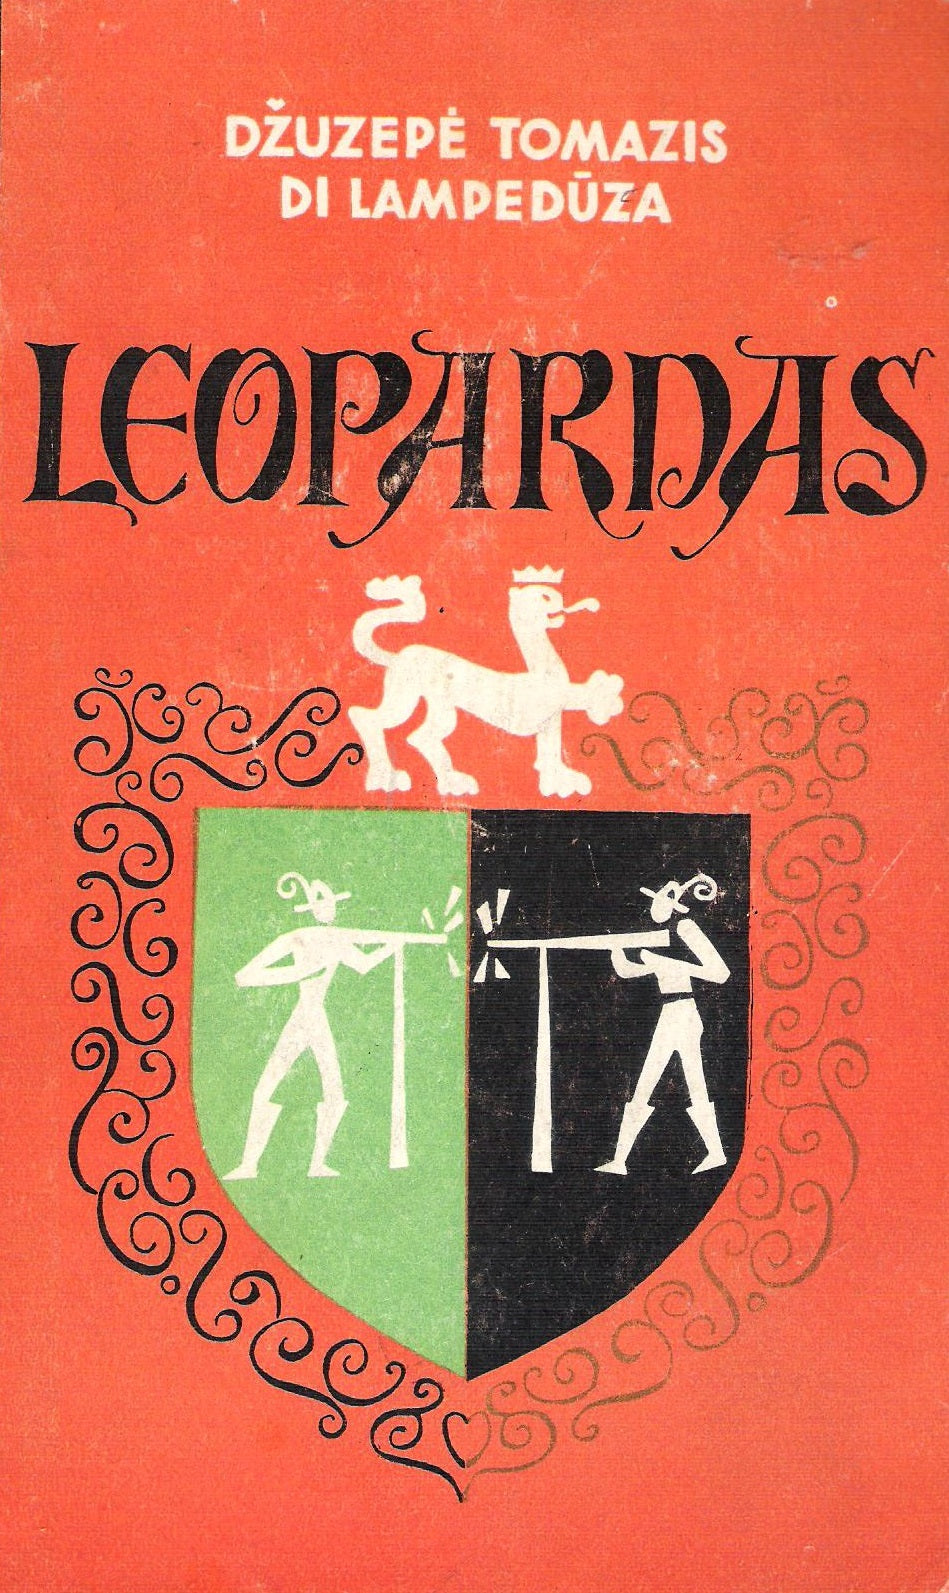 Džuzepė Tomazis Di Lampedūza - Leopardas